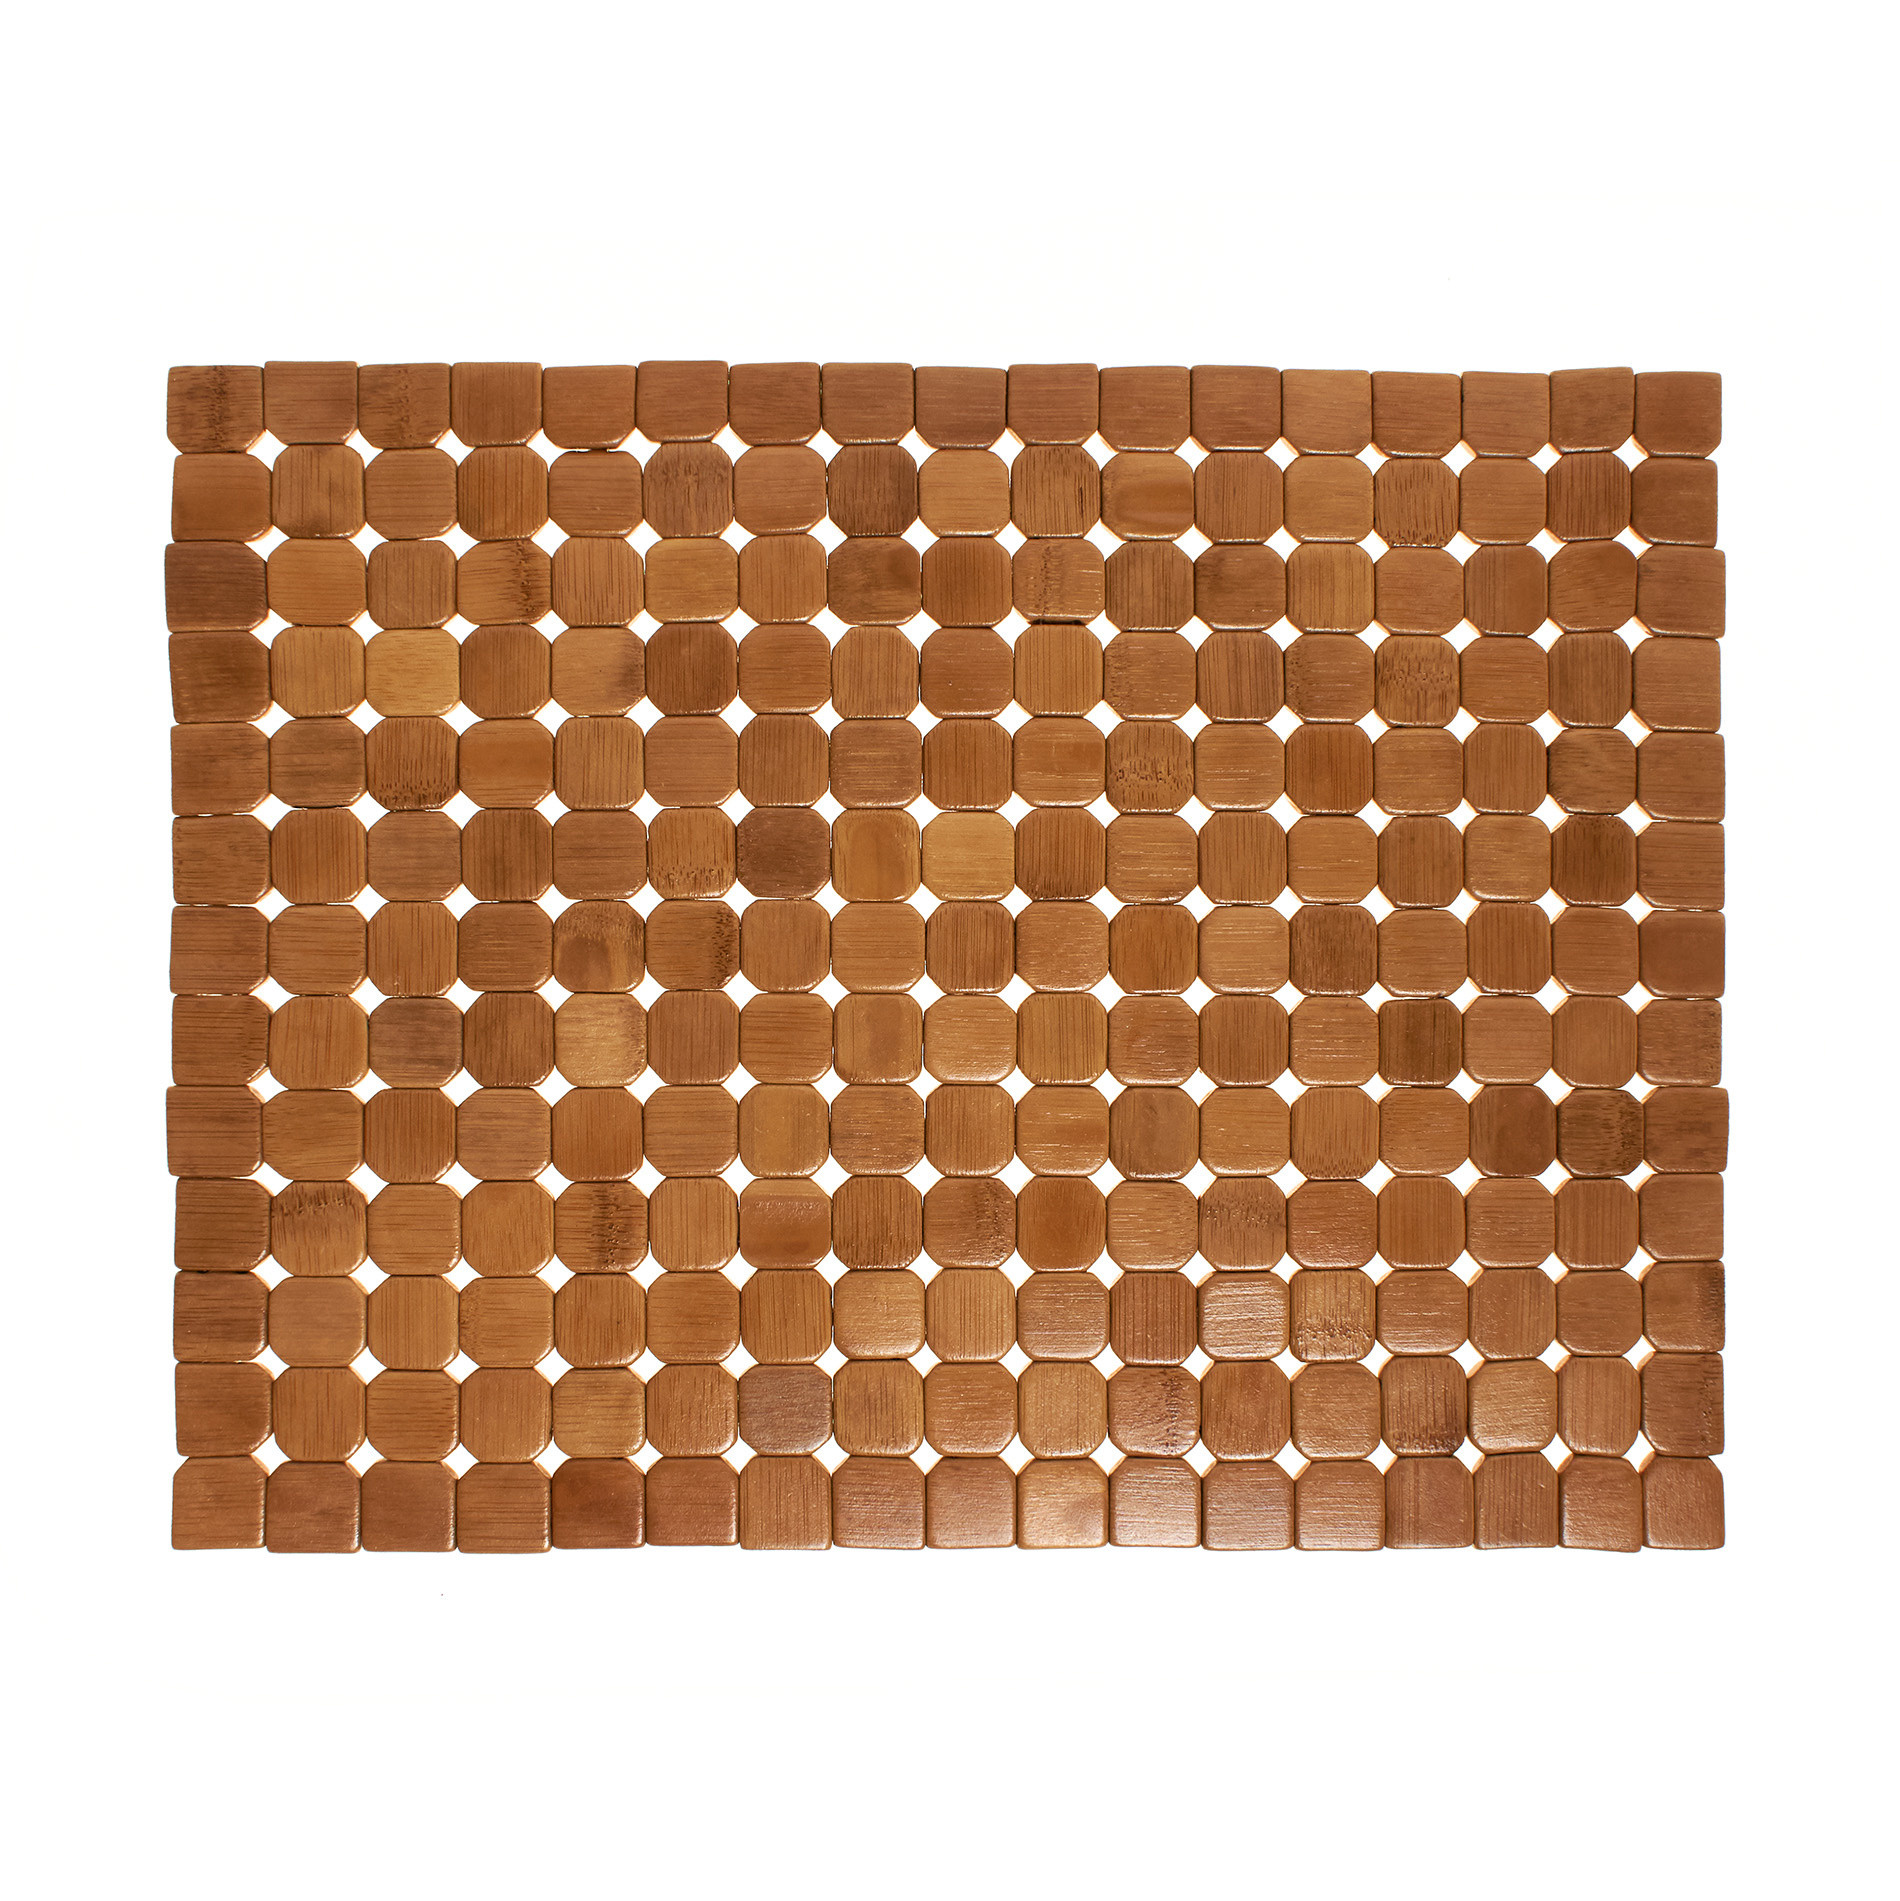 Расписной бамбуковый коврик для столовых приборов Coincasa, светло-коричневый подставка для столовых приборов terka единый размер бежевый